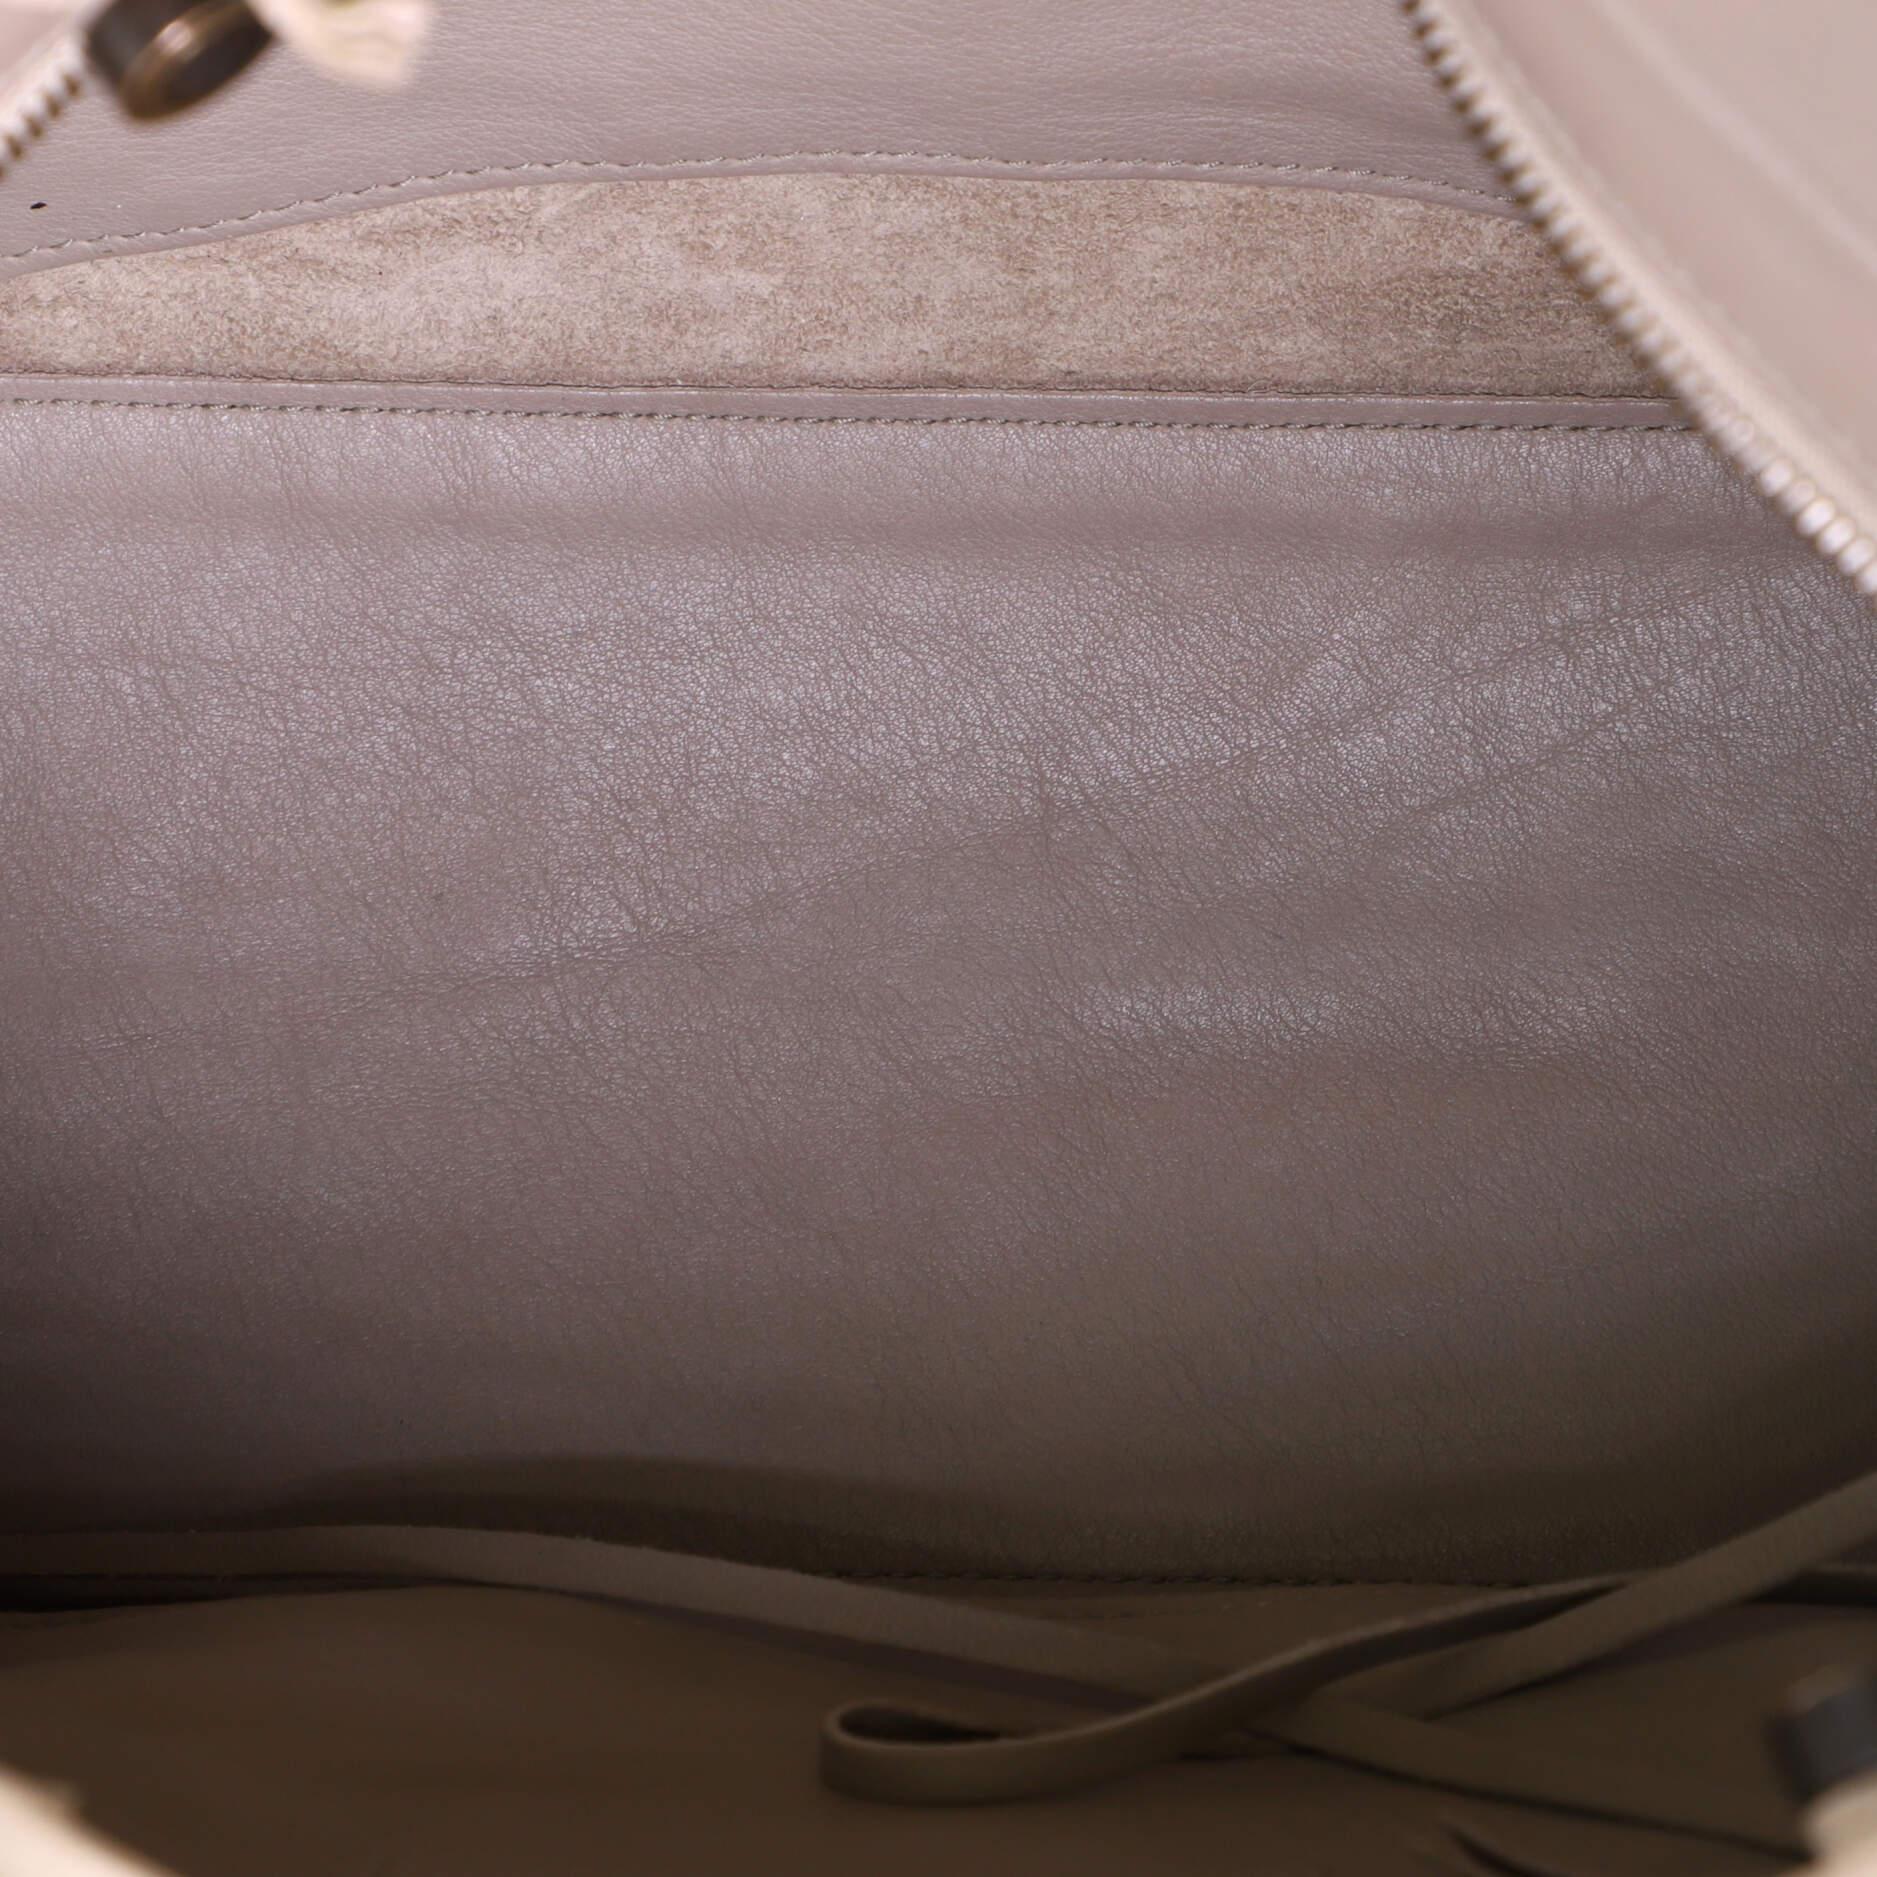 Balenciaga Blackout City Bag Leather Medium In Good Condition In NY, NY